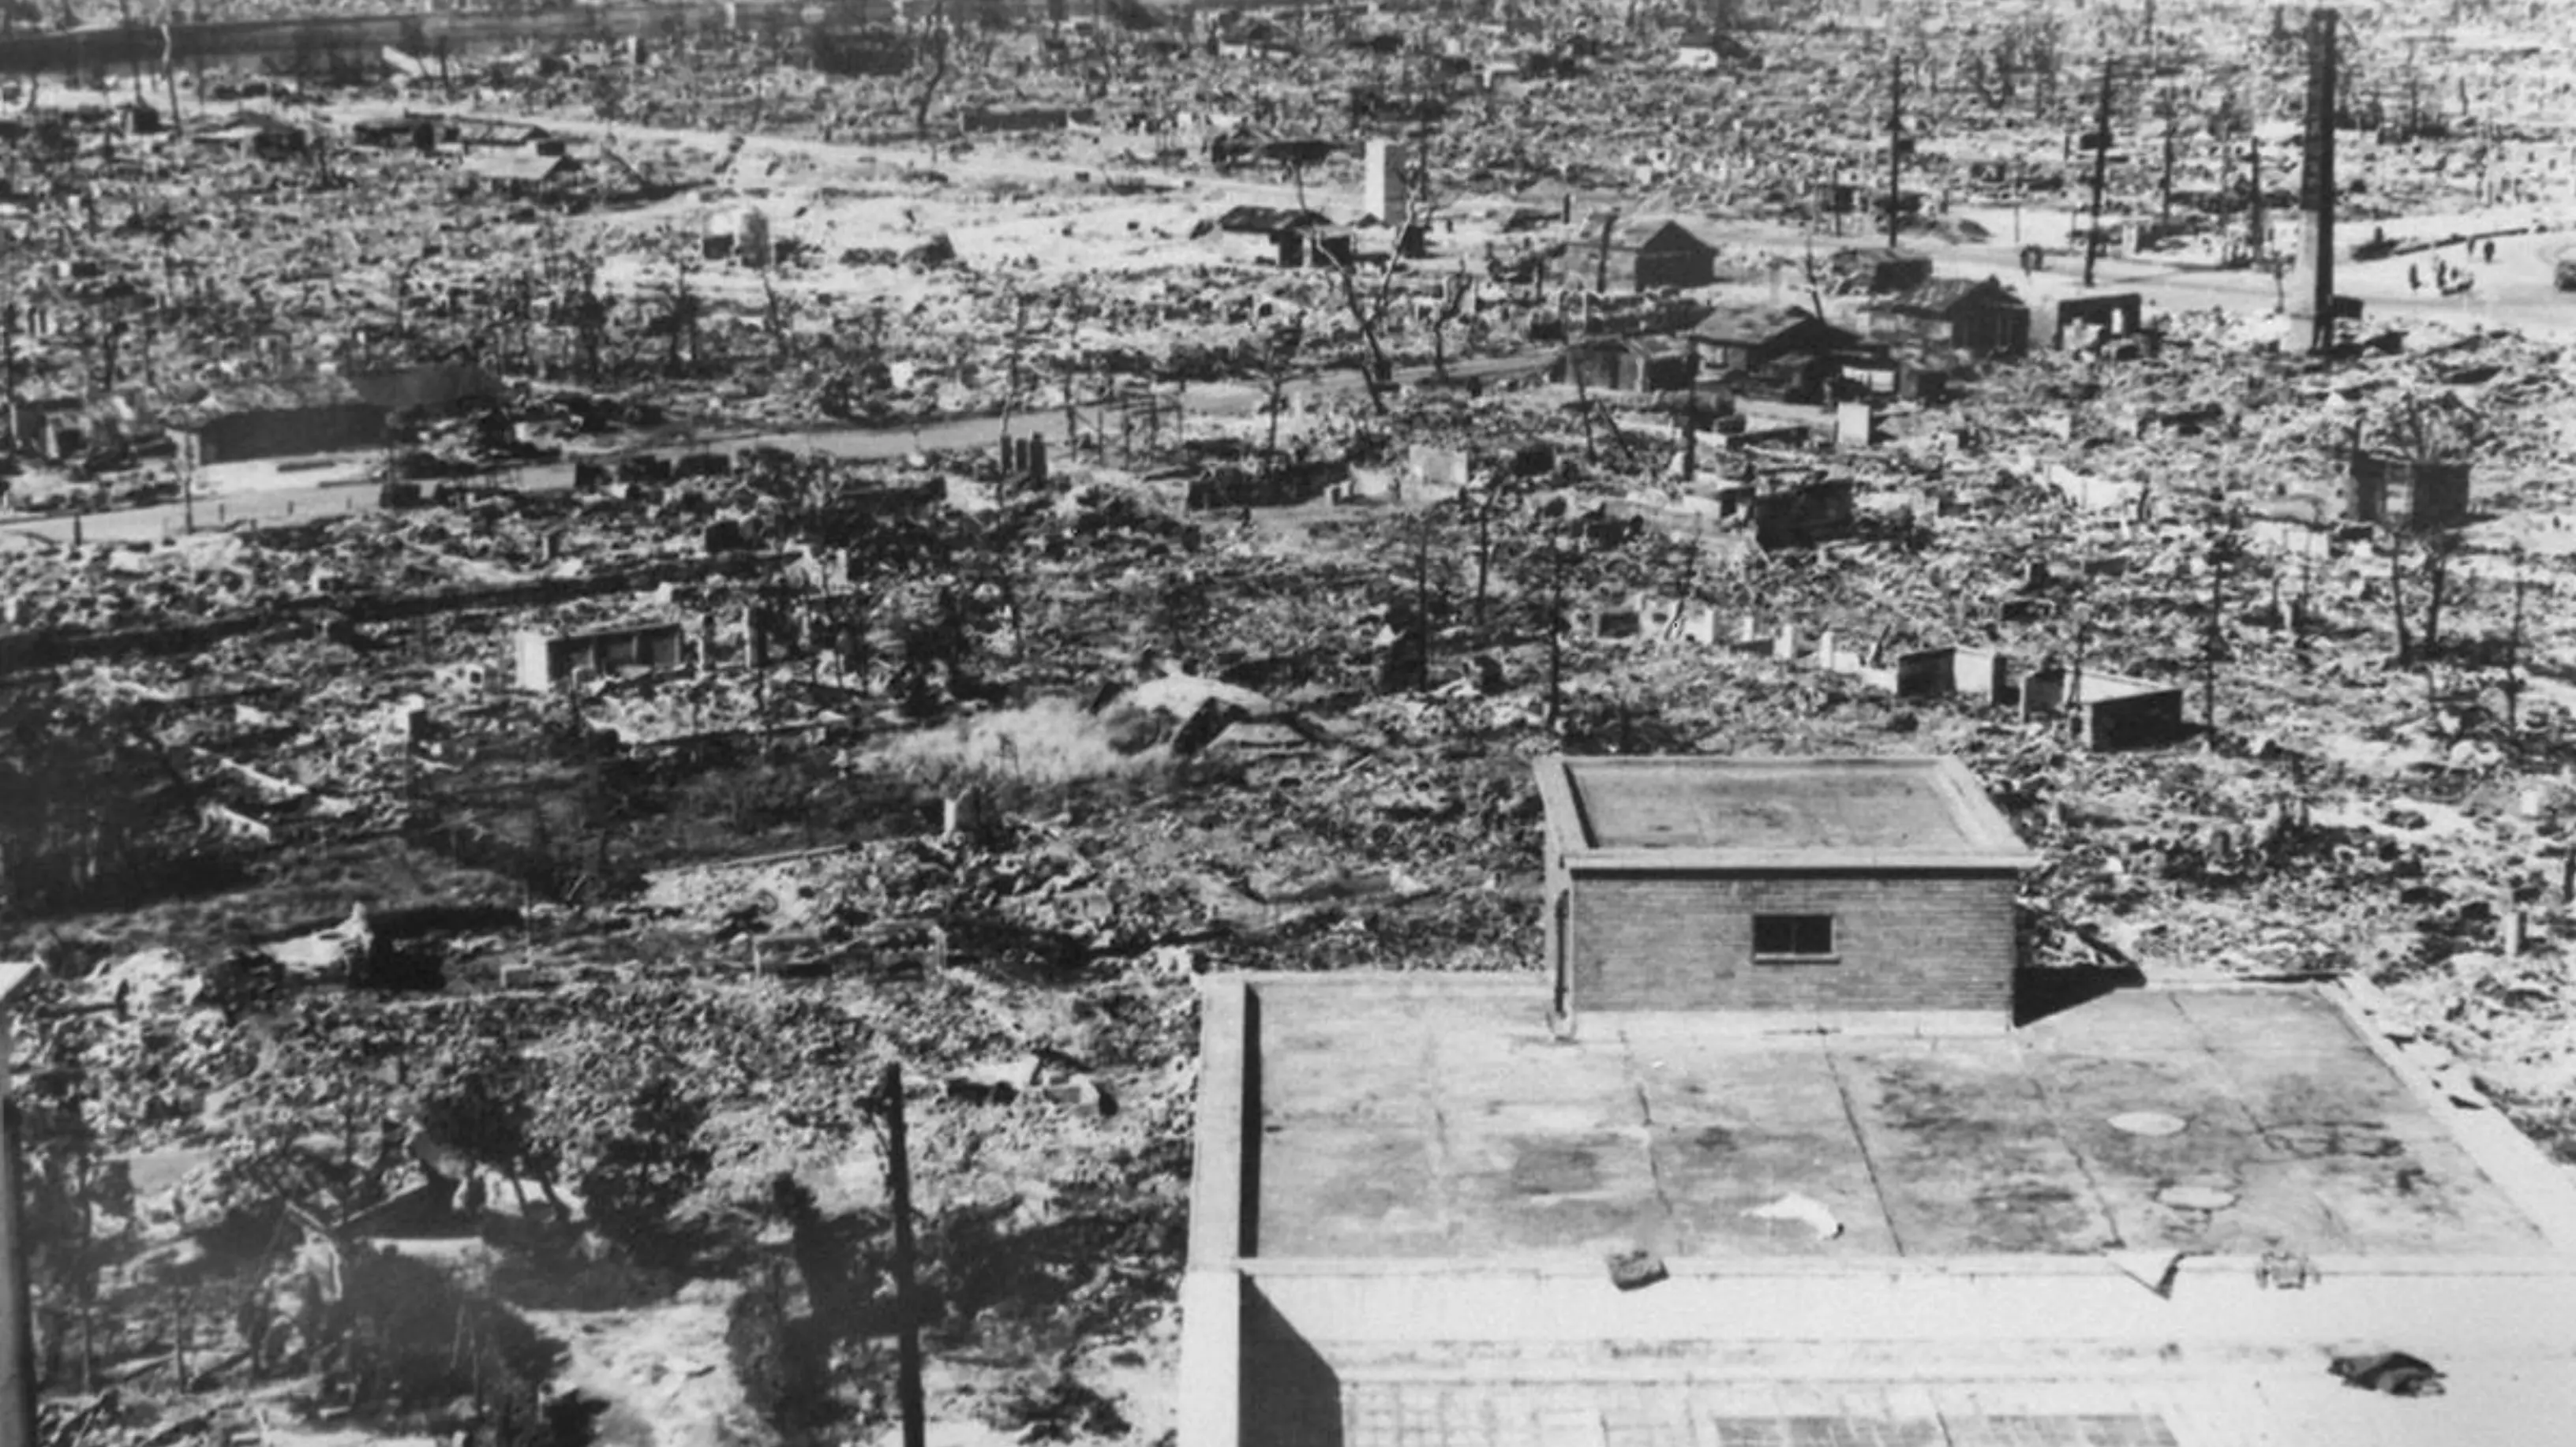 Kondisi Hiroshima setelah dibom oleh AS. (AFP)